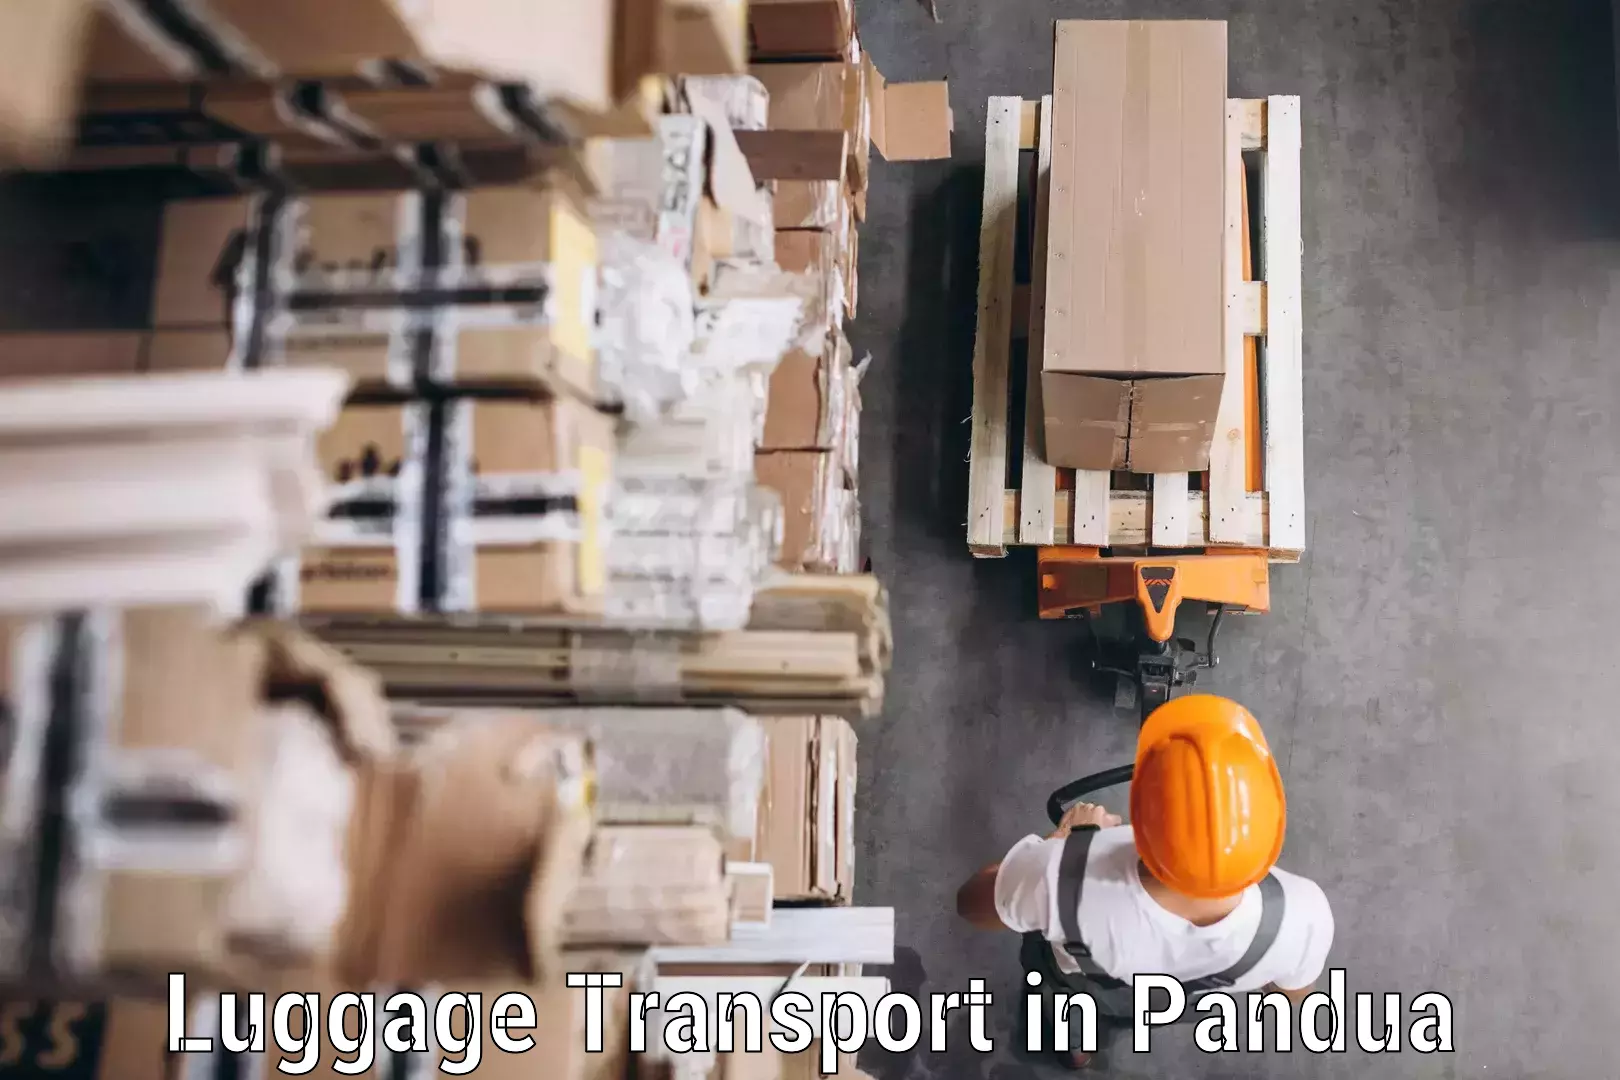 Baggage transport management in Pandua